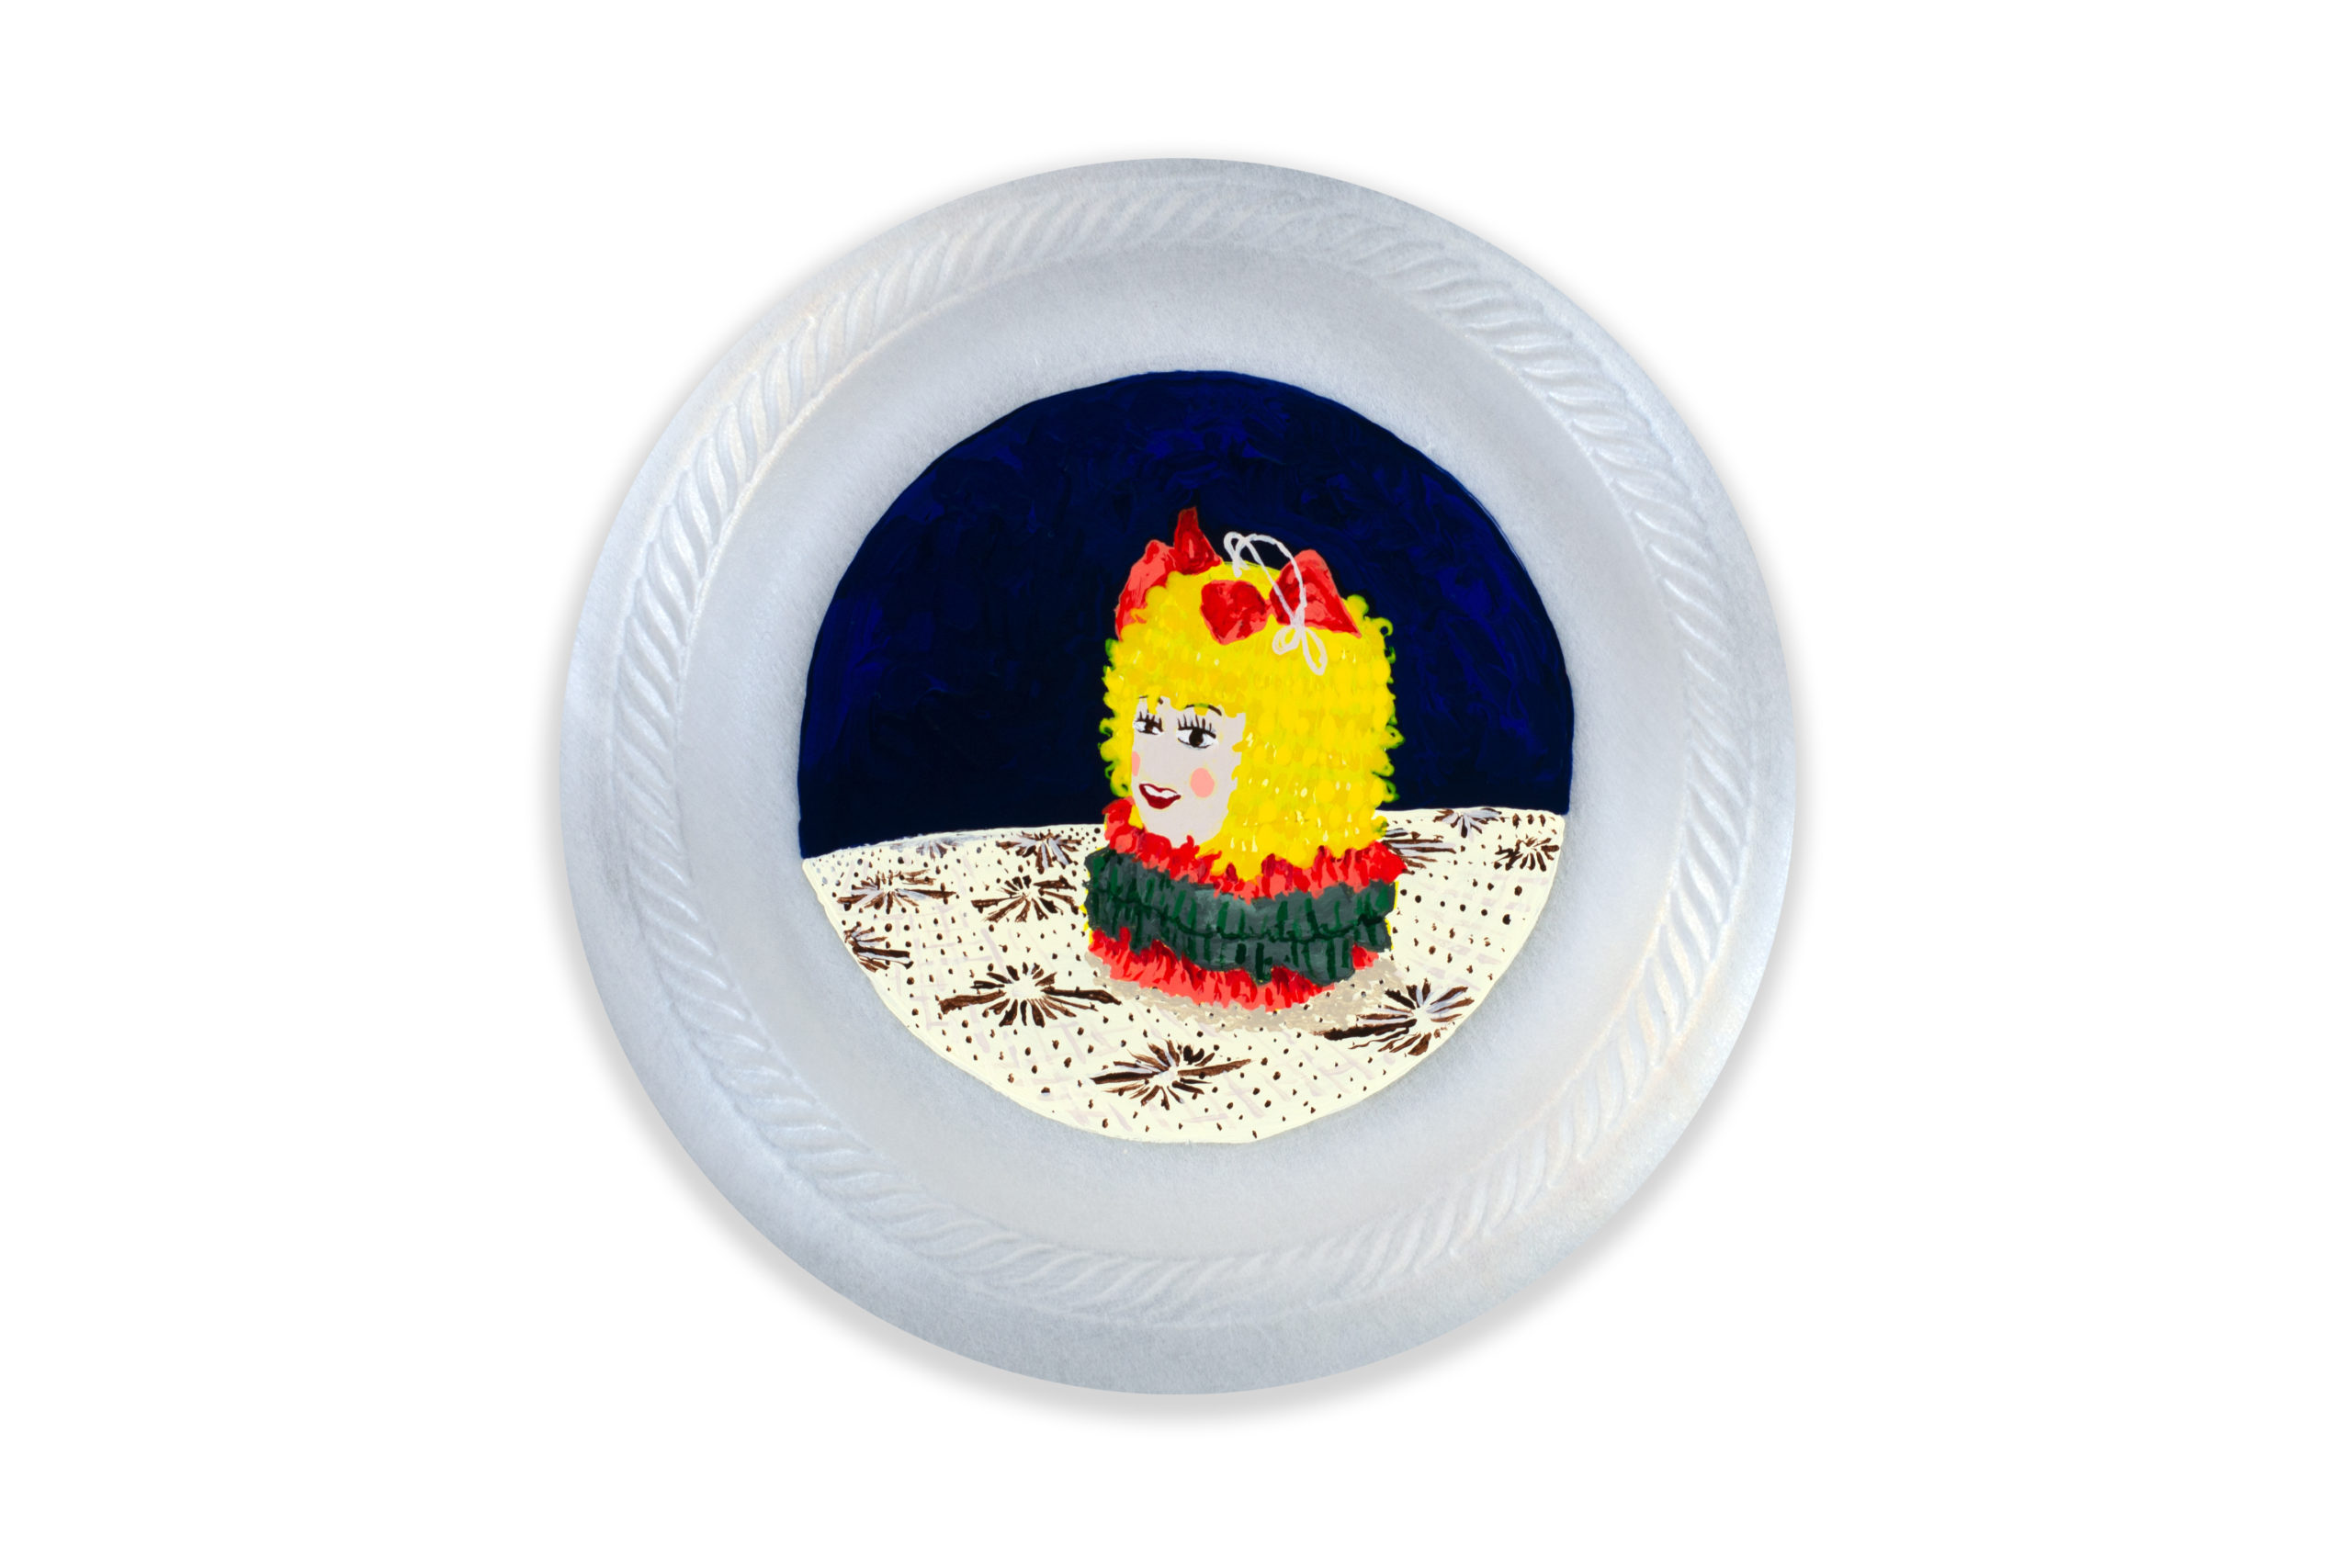 

											Fernando Andrade</b>

											<em>
												Homemade Cakes and Piñatas</em> 

											<h4>
												Santa Fe: June 10 – August 27, 2022											</h4>

		                																																													<i>Piñata de Joan,</i>  
																																								2022, 
																																								Acrylic on Primed Styrofoam Plate, 
																																								6 inches in diameter 
																								
		                				